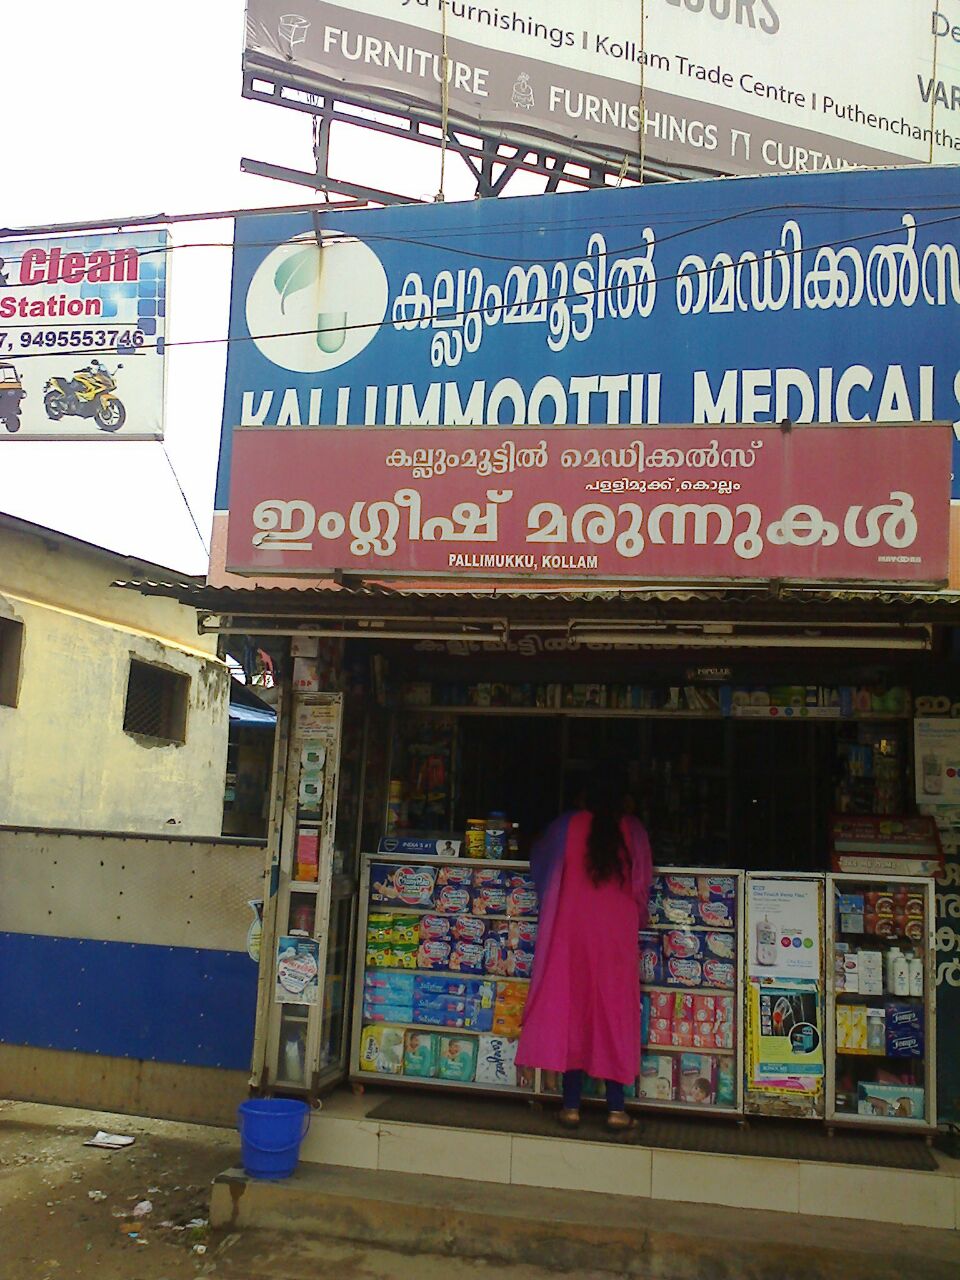 Kalumootil Medicals